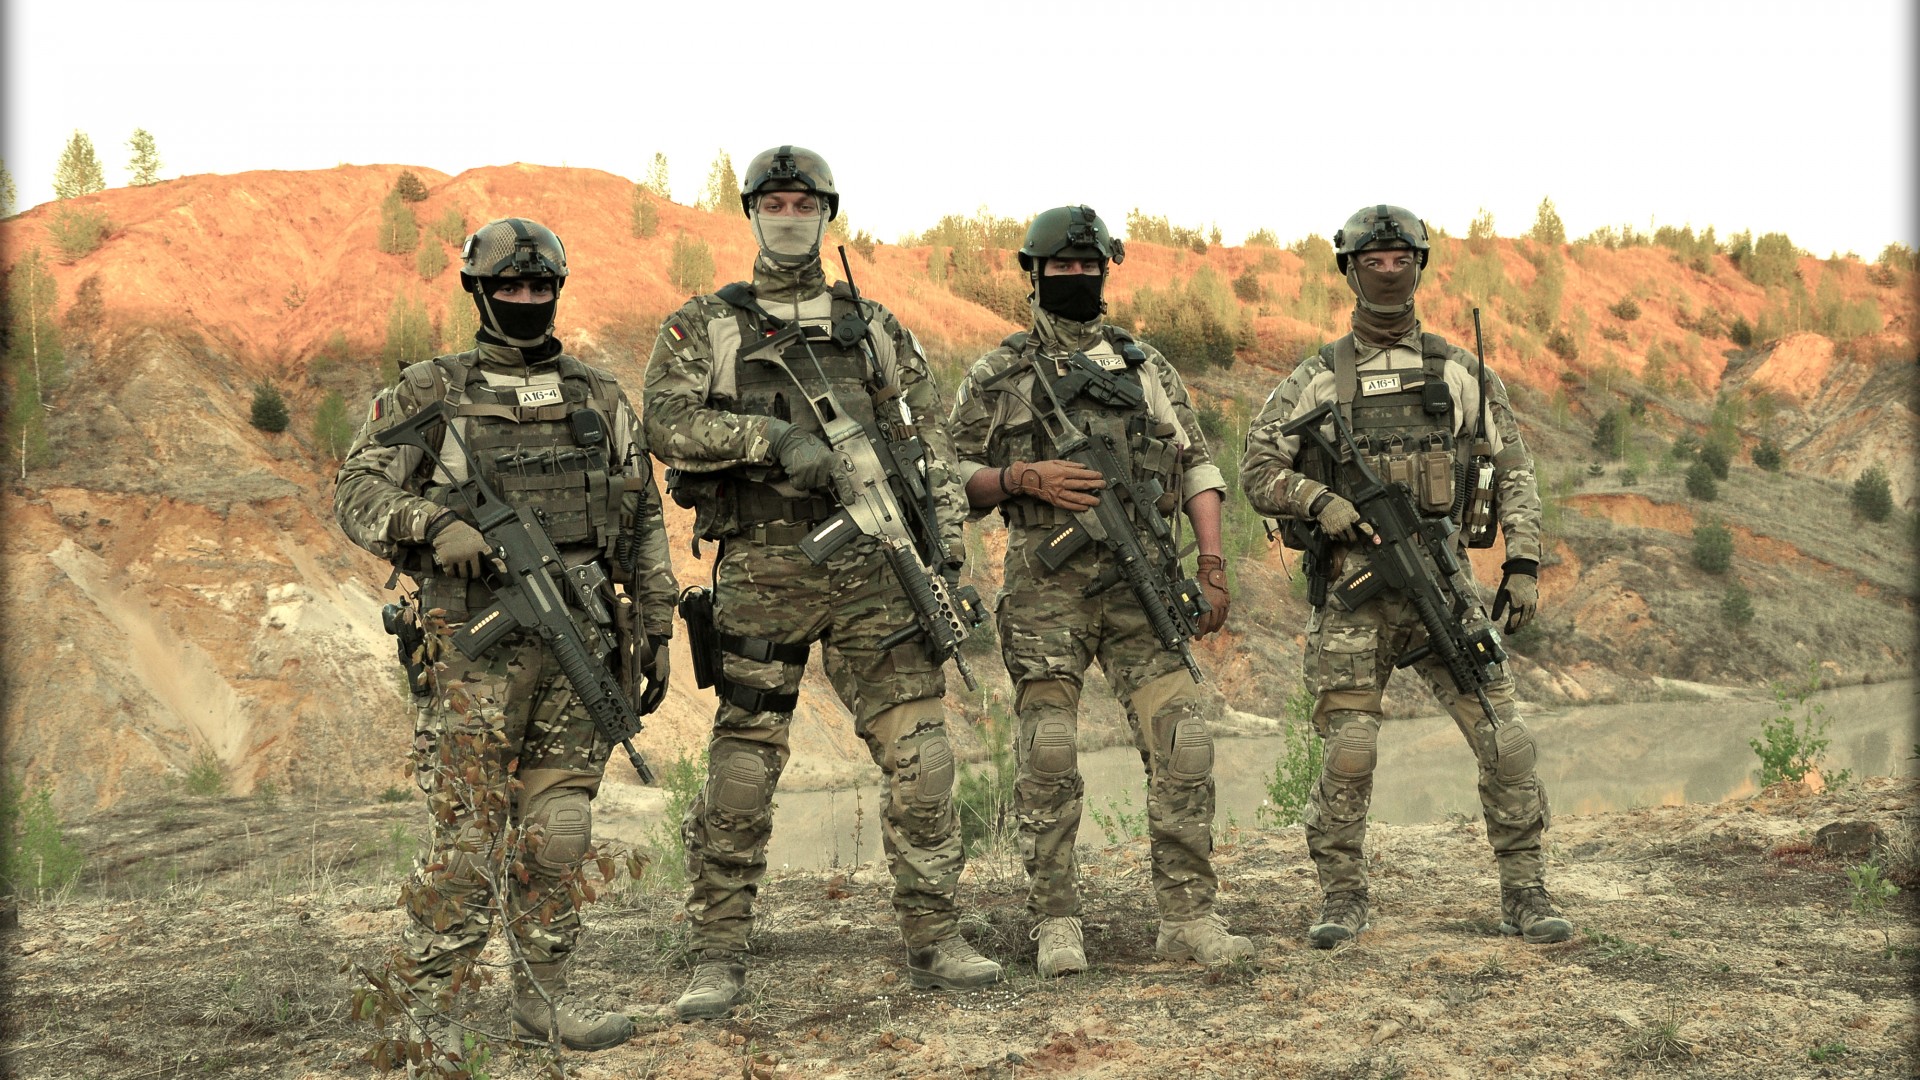 солдат, воинская часть специального назначения, Бундесвер, KSK, special forces, Kommando Spezialkrafte, soldier, Bundeswehr, camo, rifle, field (horizontal)